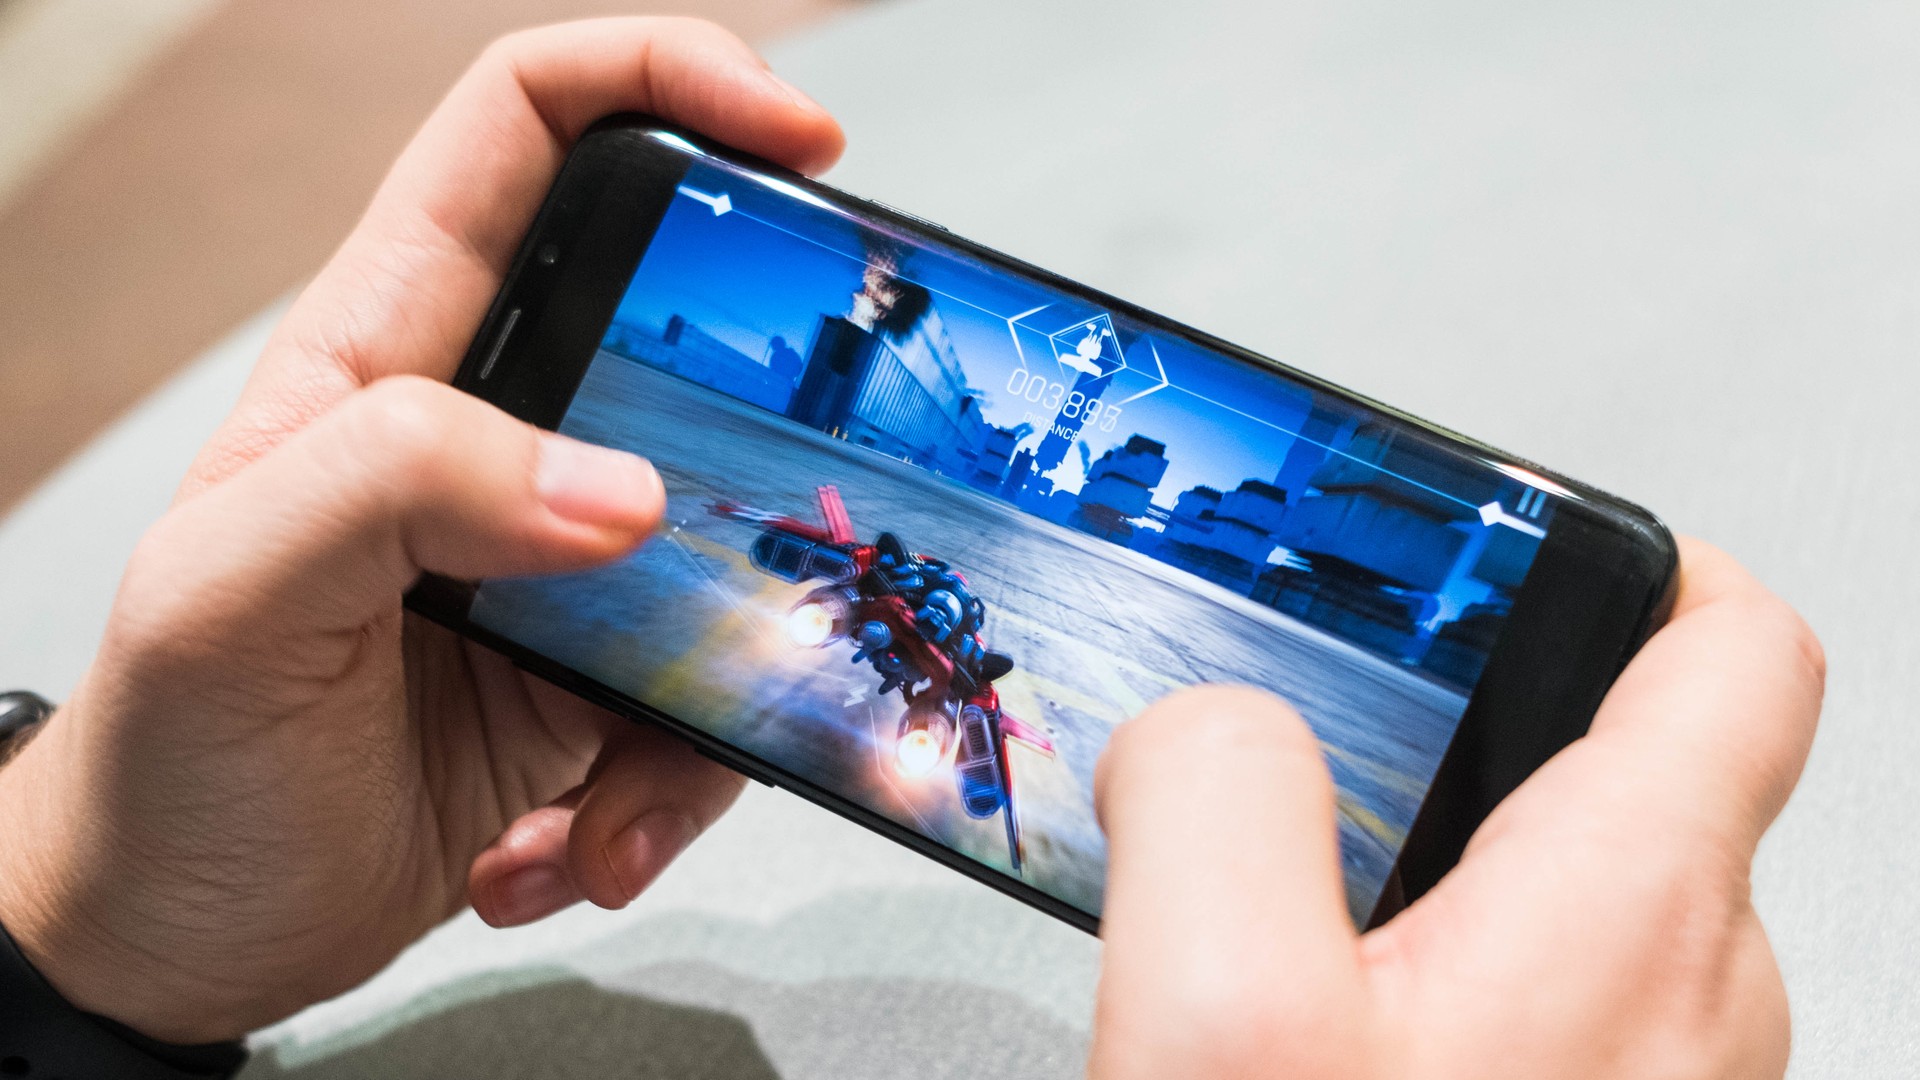 Gamers brasileiros preferem consoles a celulares, aponta pesquisa